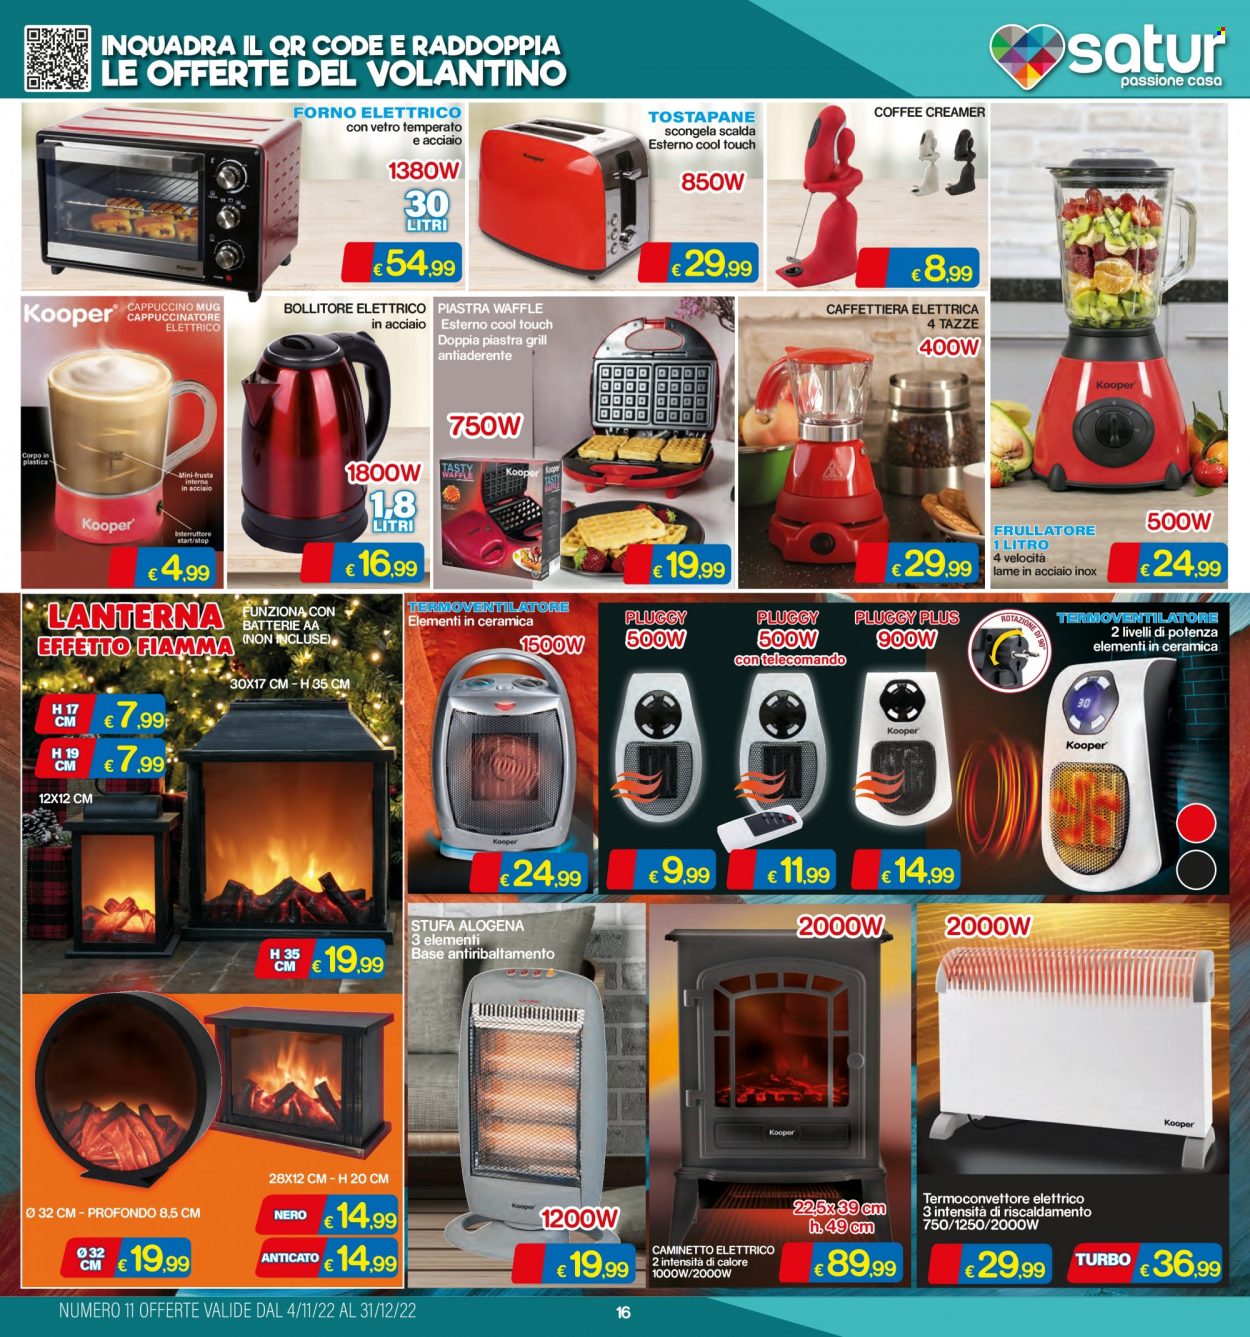 thumbnail - Volantino Satur - 4/11/2022 - 31/12/2022 - Prodotti in offerta - lanterna, caffettiera, forno, forno elettrico, frullatore, tostapane, bollitore, termoconvettore, termoventilatore, stufa, stufa alogena. Pagina 16.